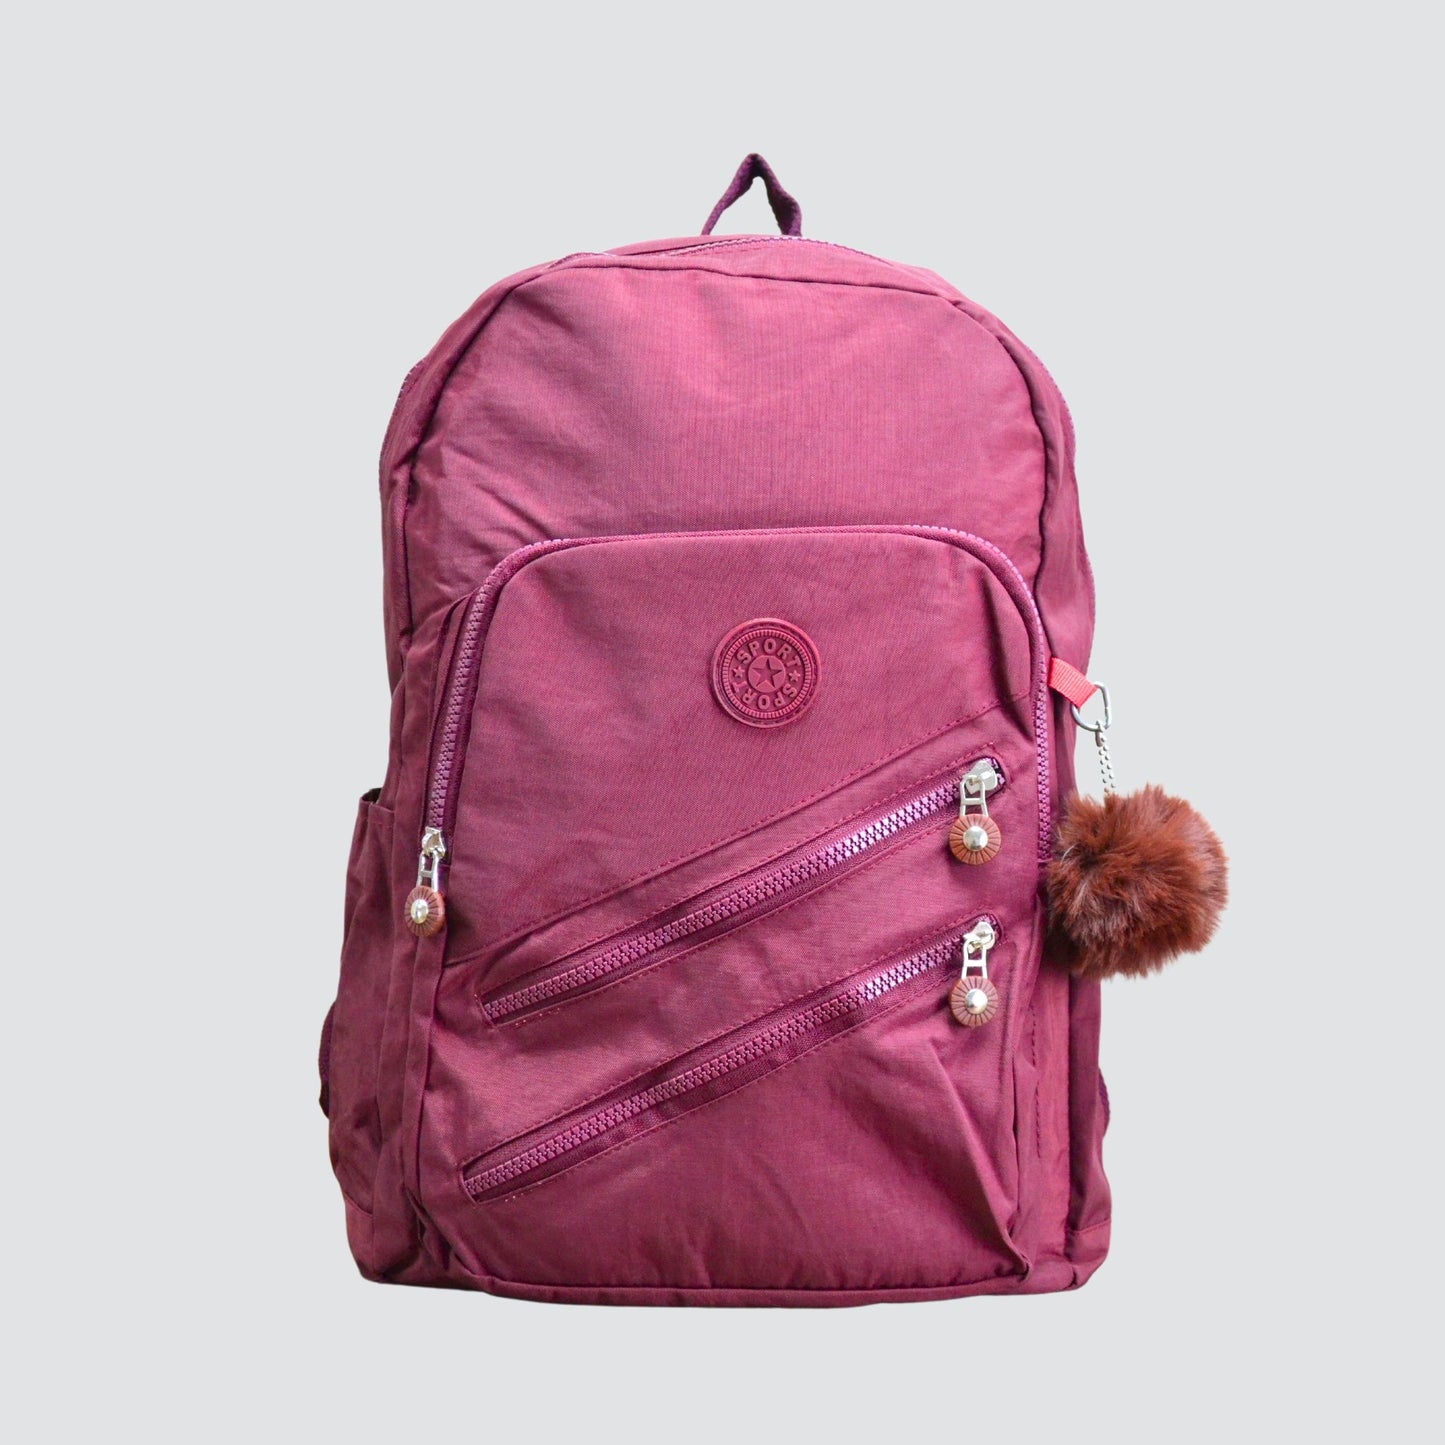 Burgundy Sport Multipurpose Backpack